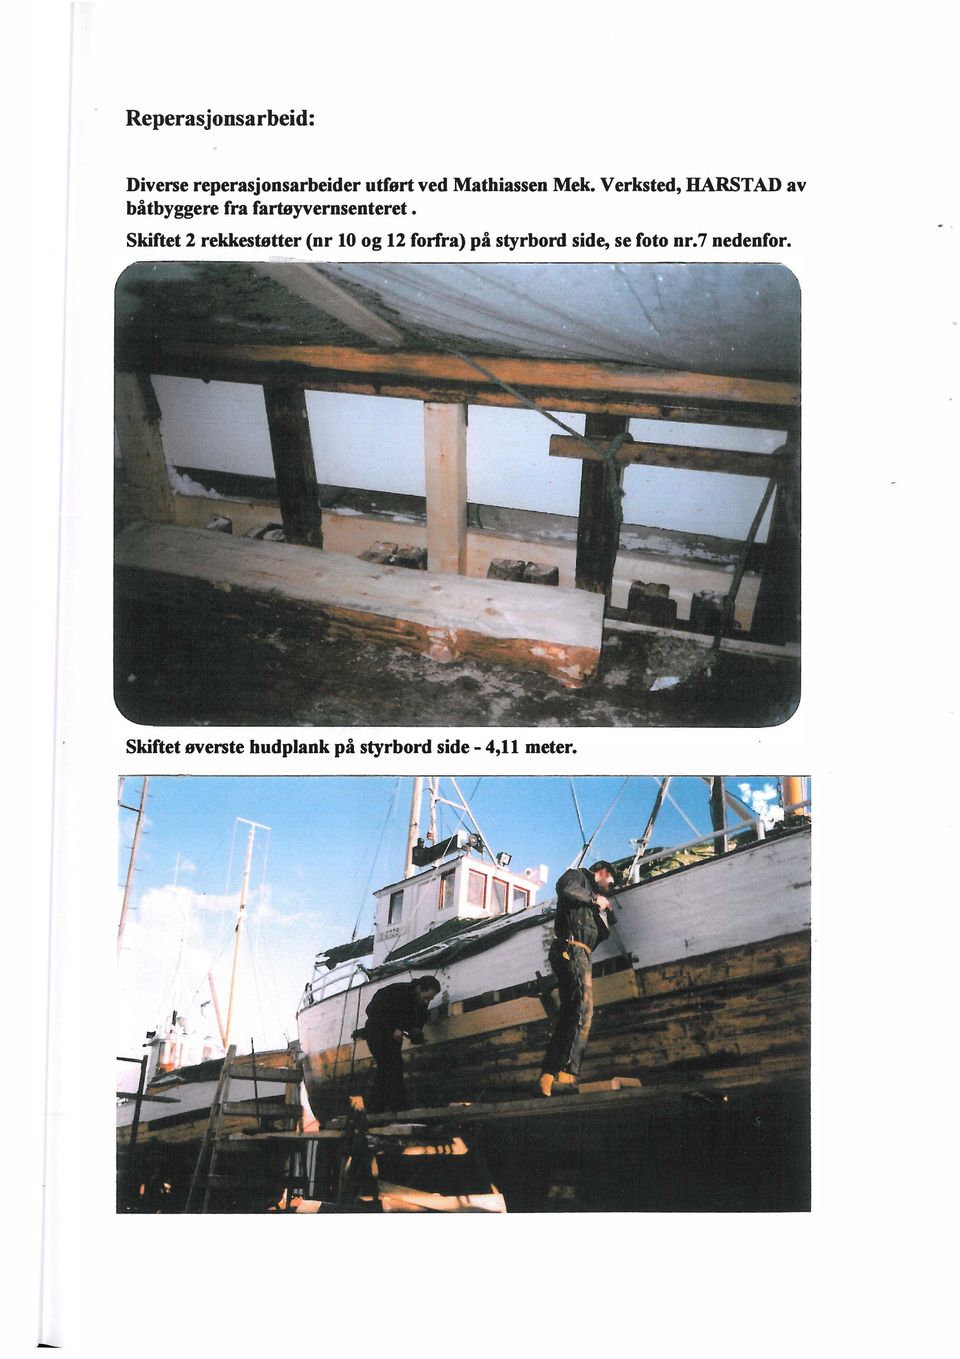 Verksted, HARSTAD av båtbyggere fra fartøyvernsenteret Skiftet 2